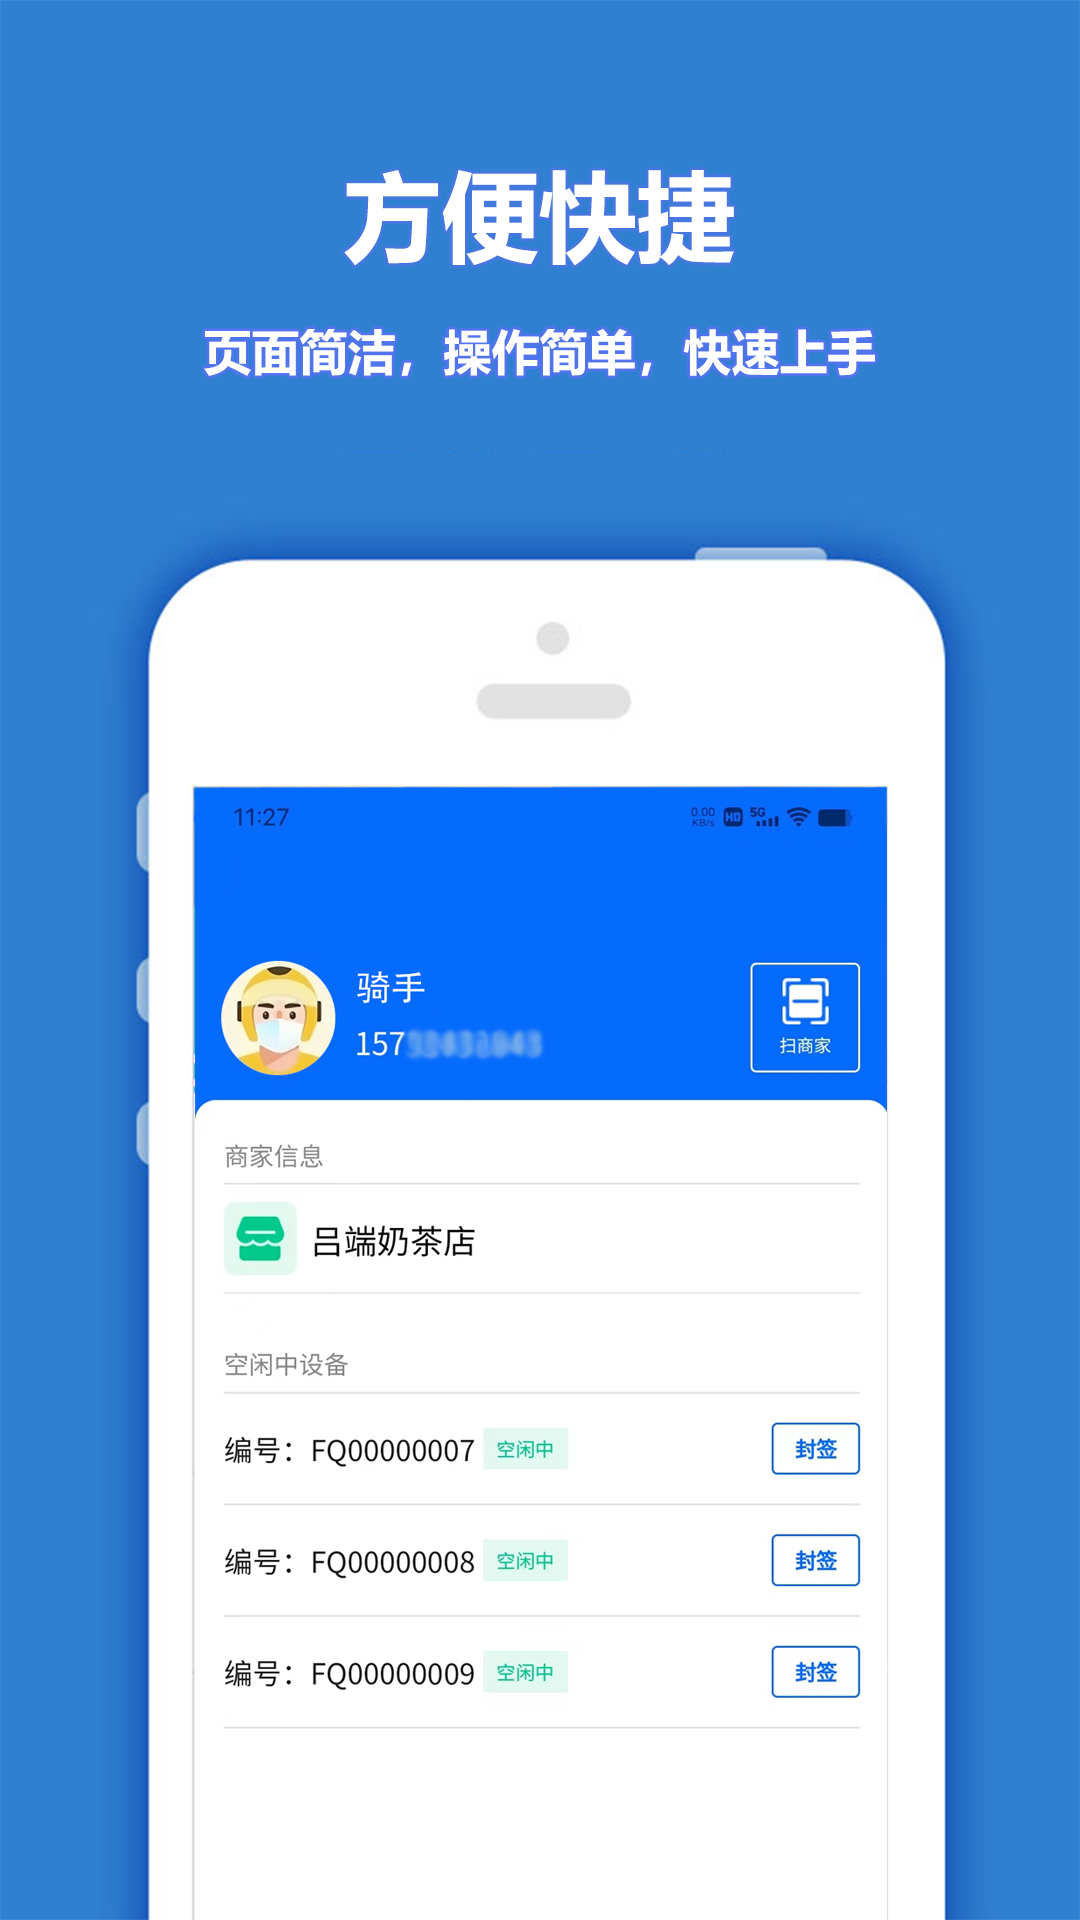 尚尚骑手app下载,尚尚骑手app官方版 v1.0.0